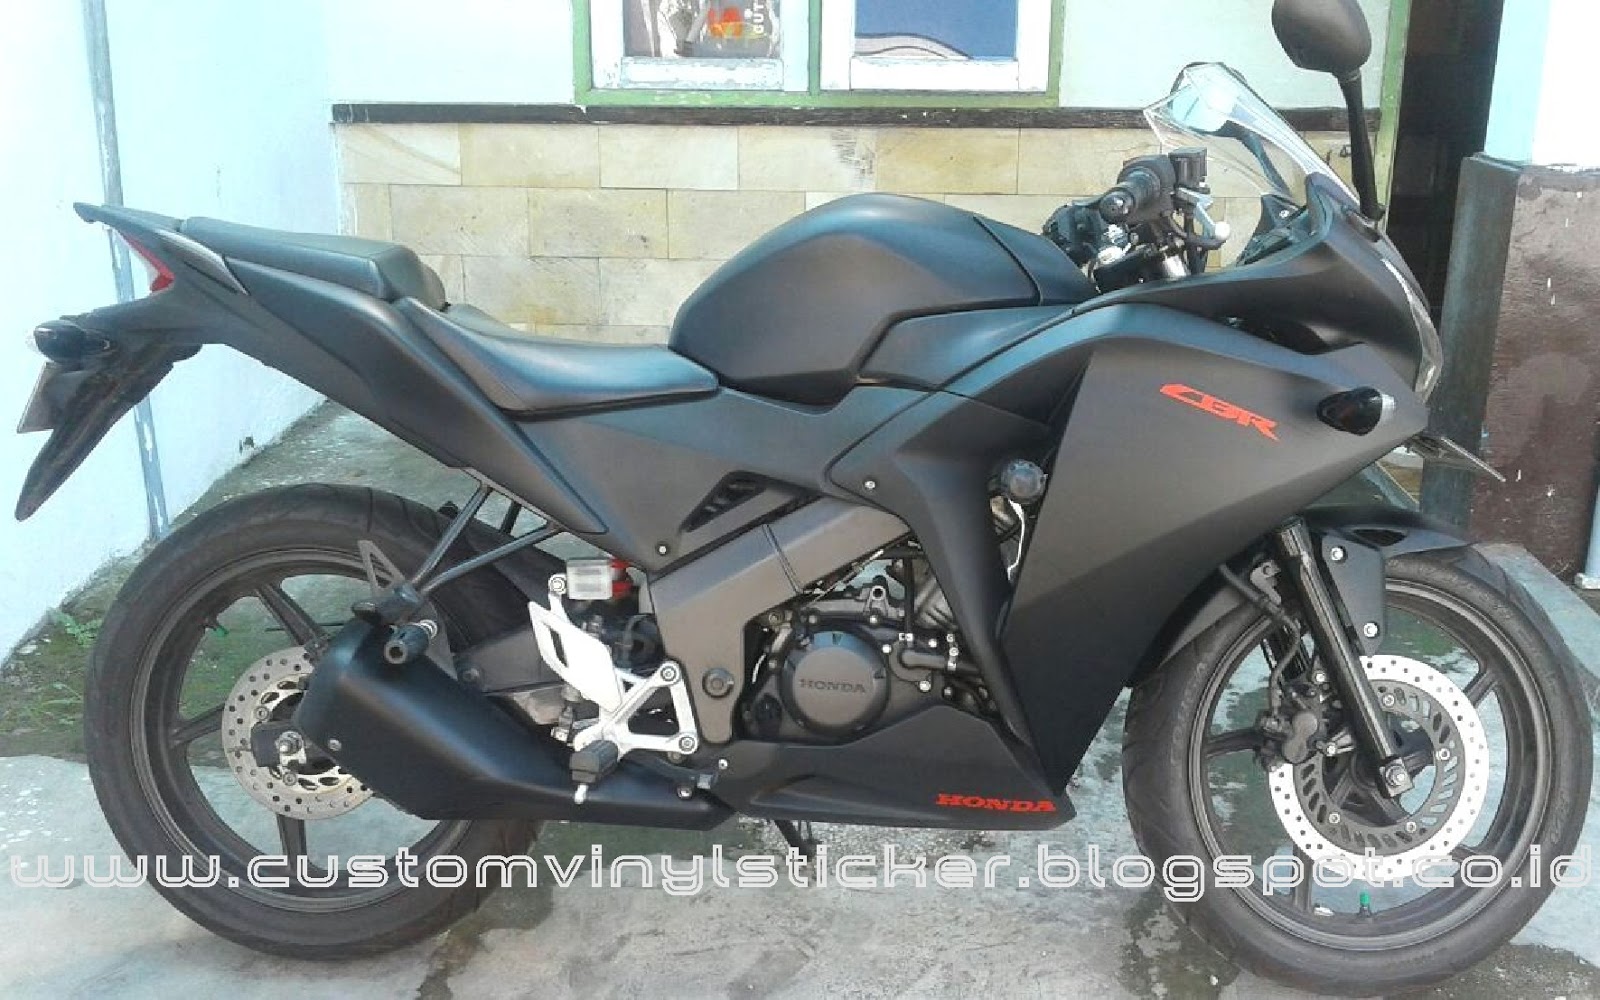 STICKRENZ: Honda CBR150 Black - Full Black Mate Wrapp